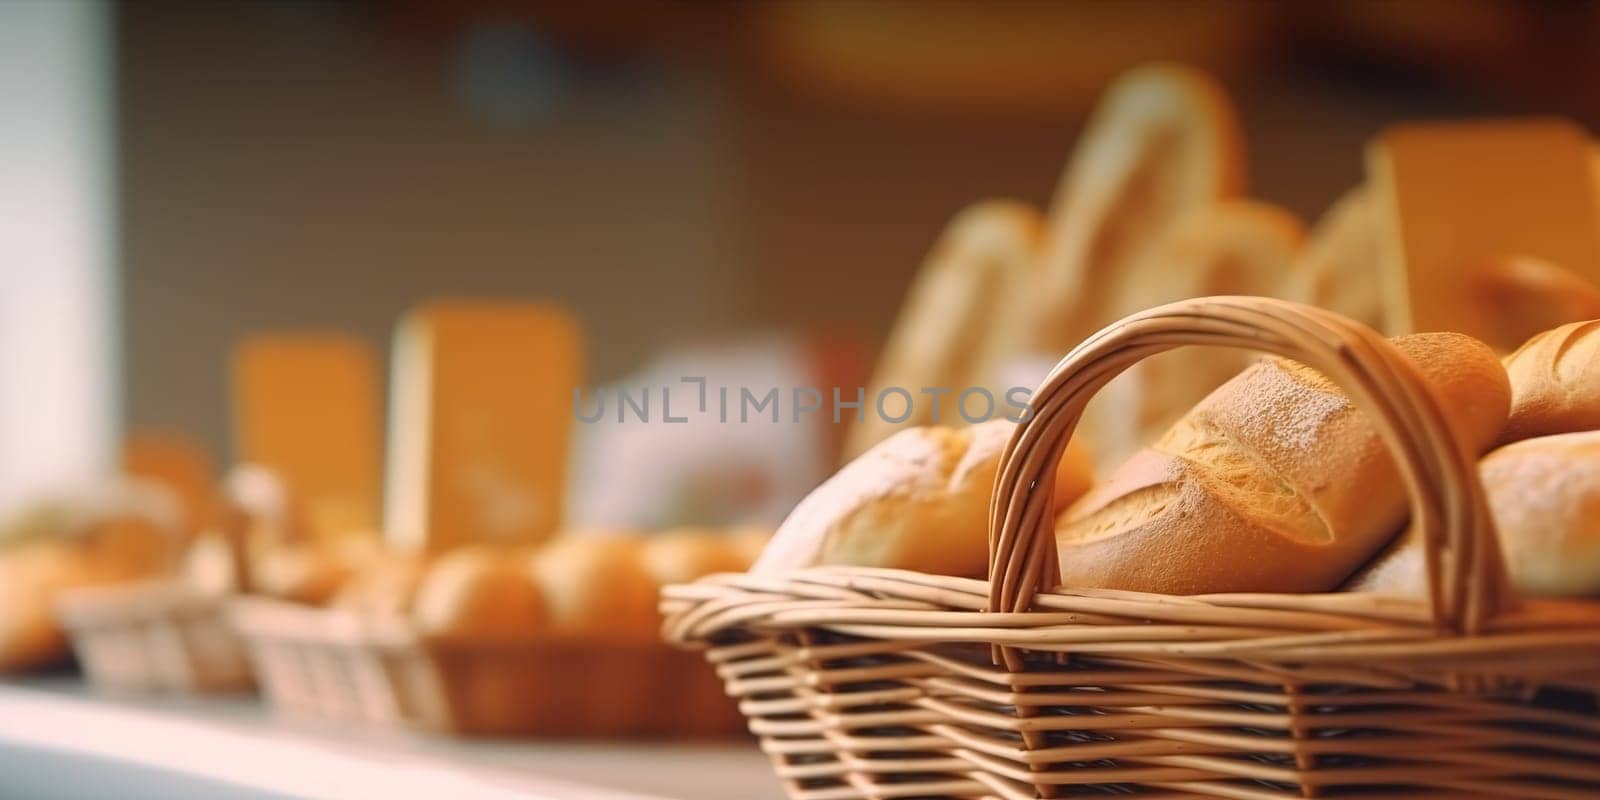 Loaves of bread in woven baskets by GekaSkr